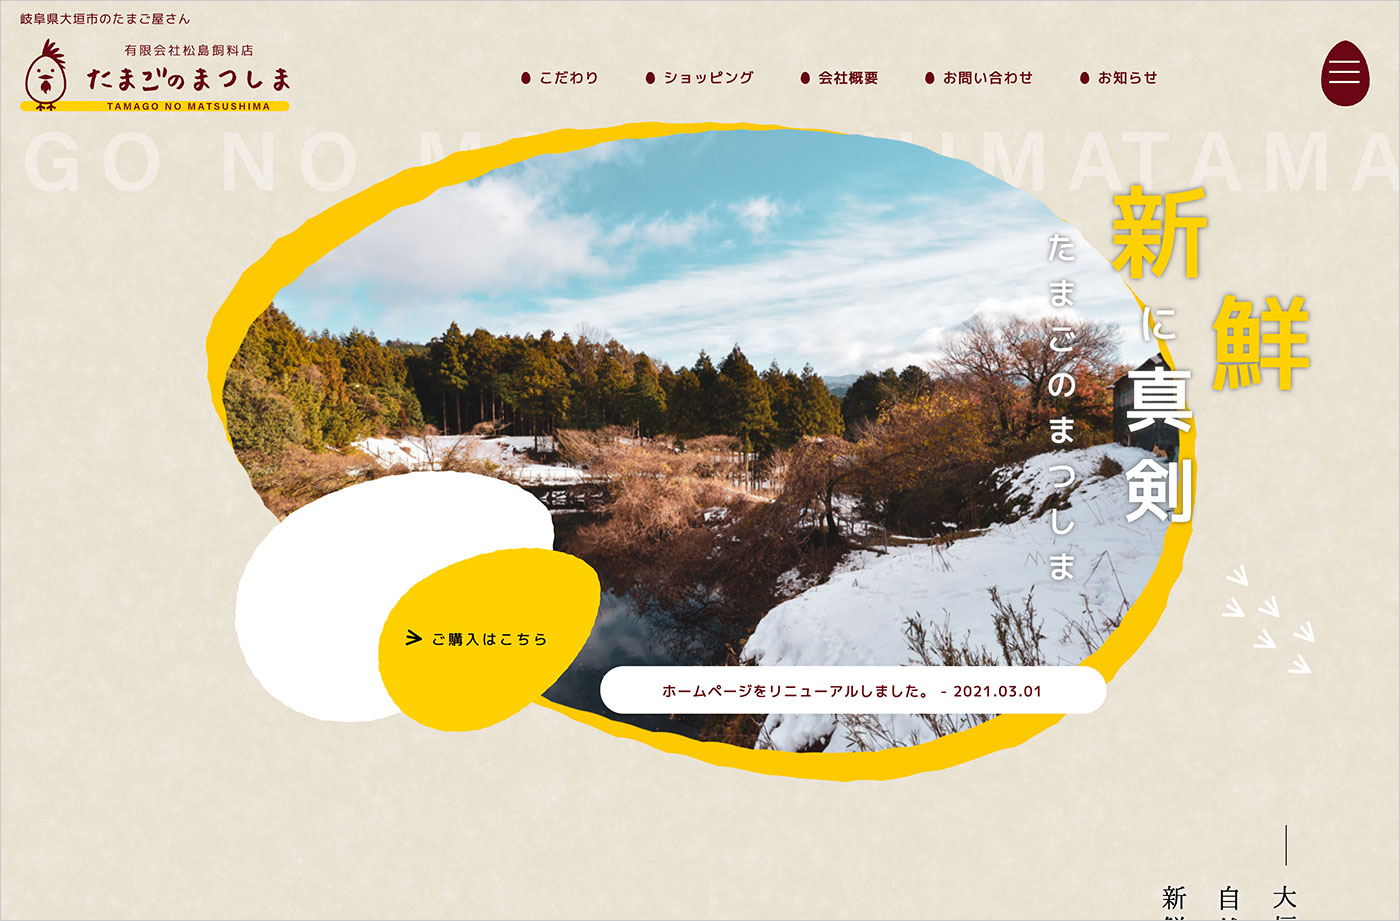 たまごのまつしま | 岐阜県大垣市のたまご屋さんウェブサイトの画面キャプチャ画像